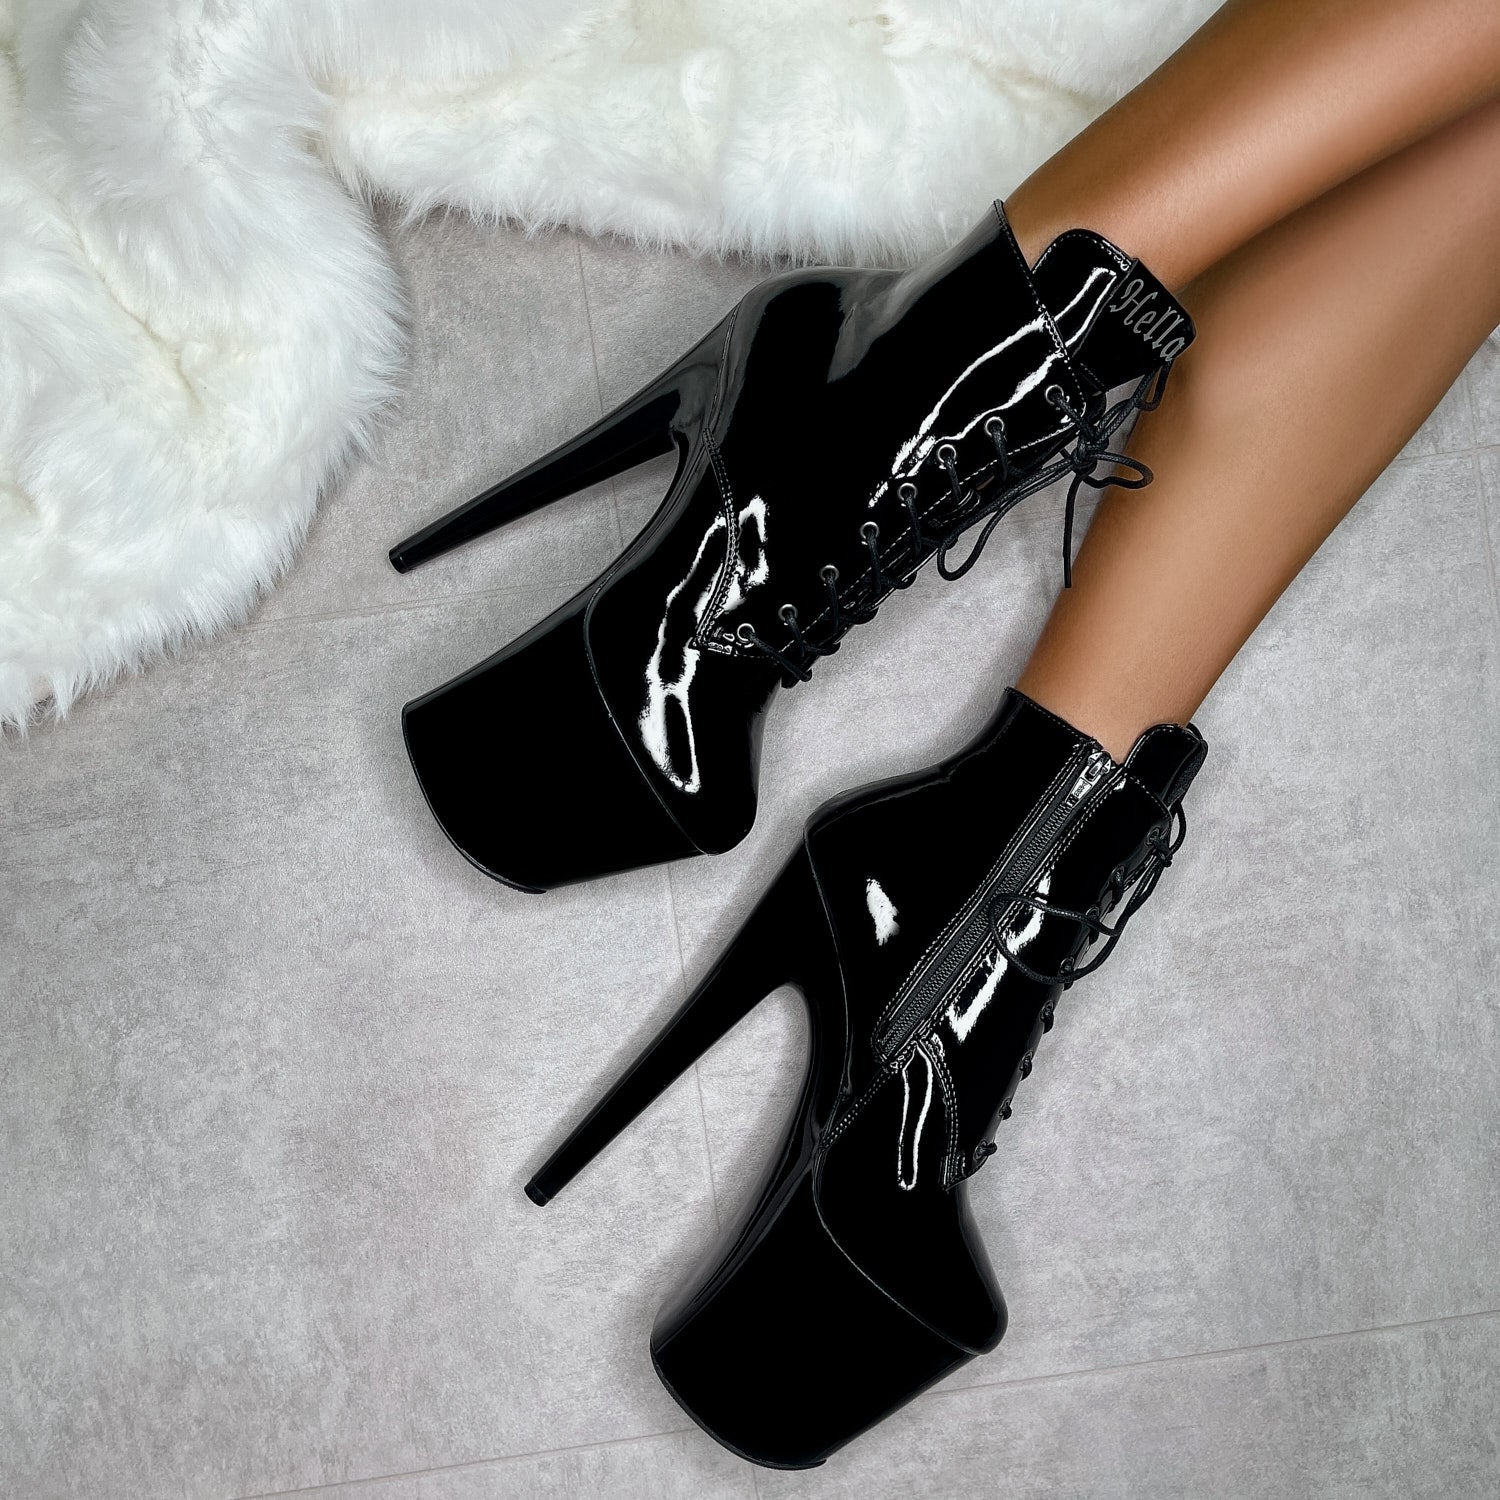 Lipkit Ankle Boot - Black Beatle - 8 INCH, stripper shoe, stripper heel, pole heel, not a pleaser, platform, dancer, pole dance, floor work